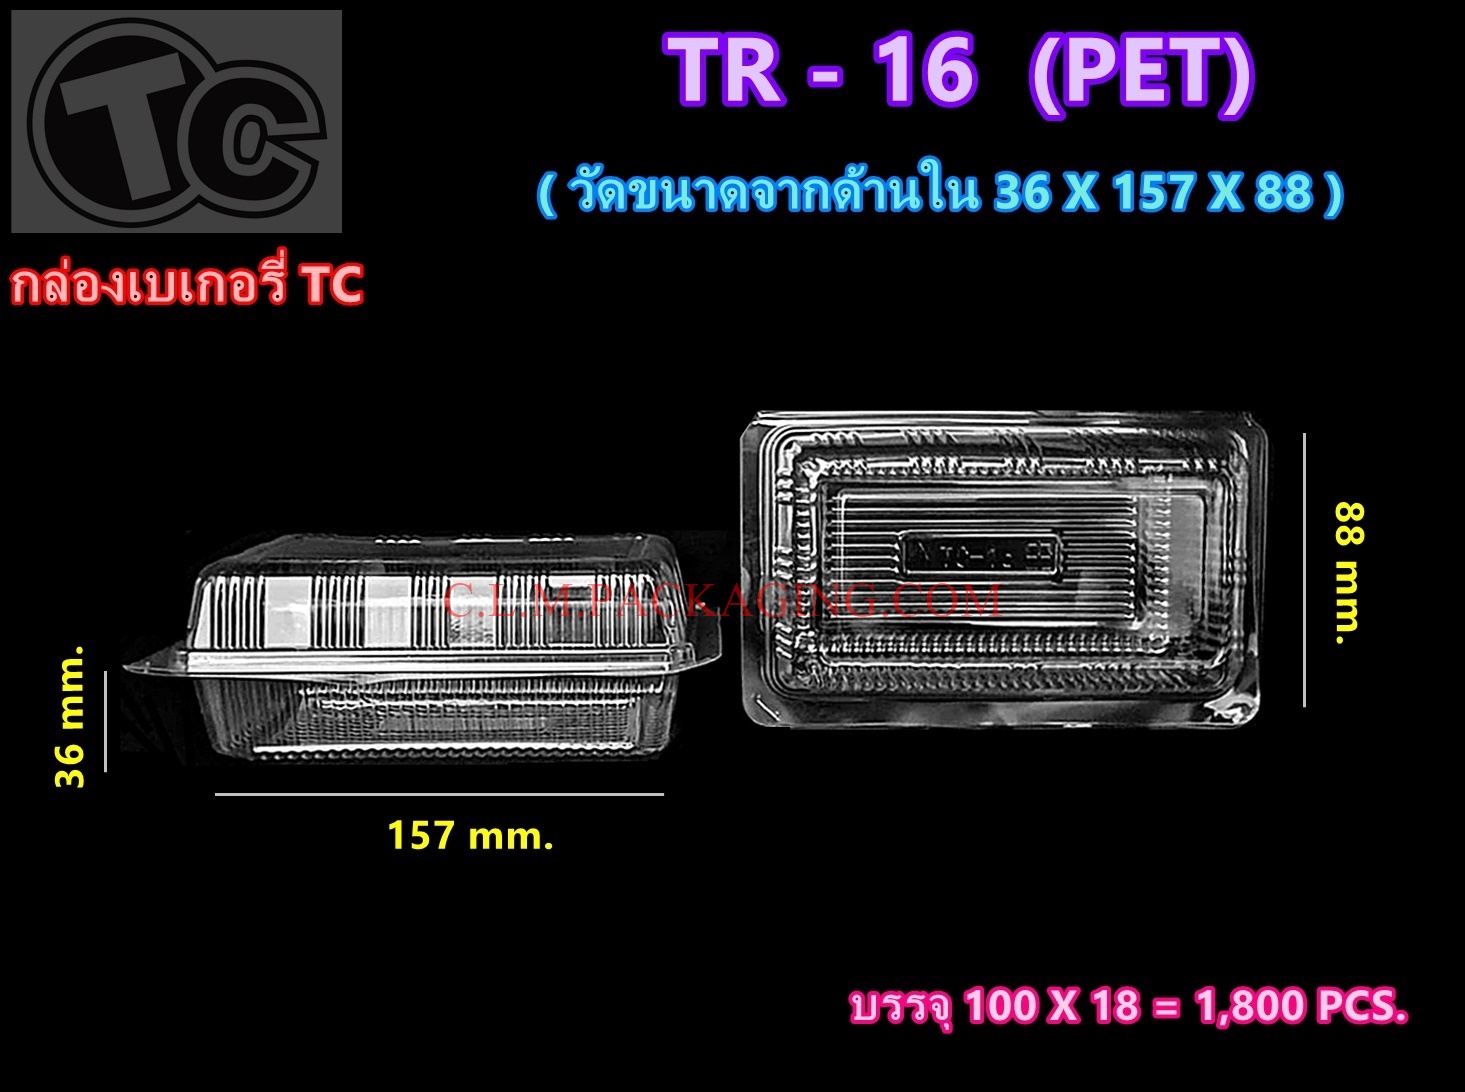 กล่องใส TR - 16 เนื้อ PET